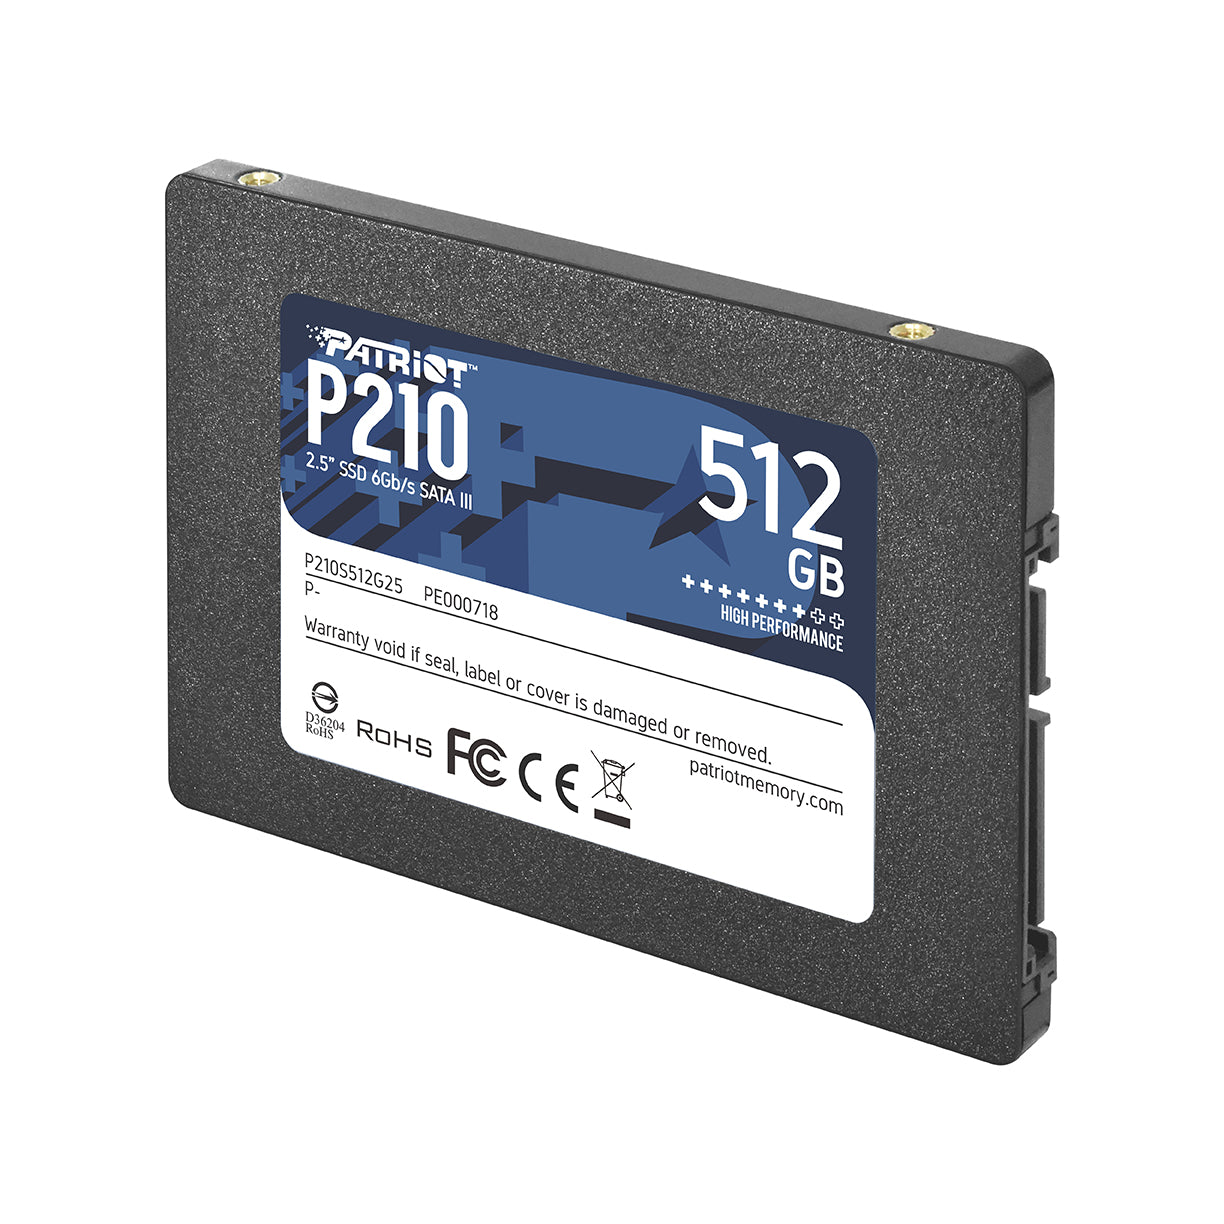 Disco duro solido Patriot P210 512GB Sata 2.5" (P210S512G25)